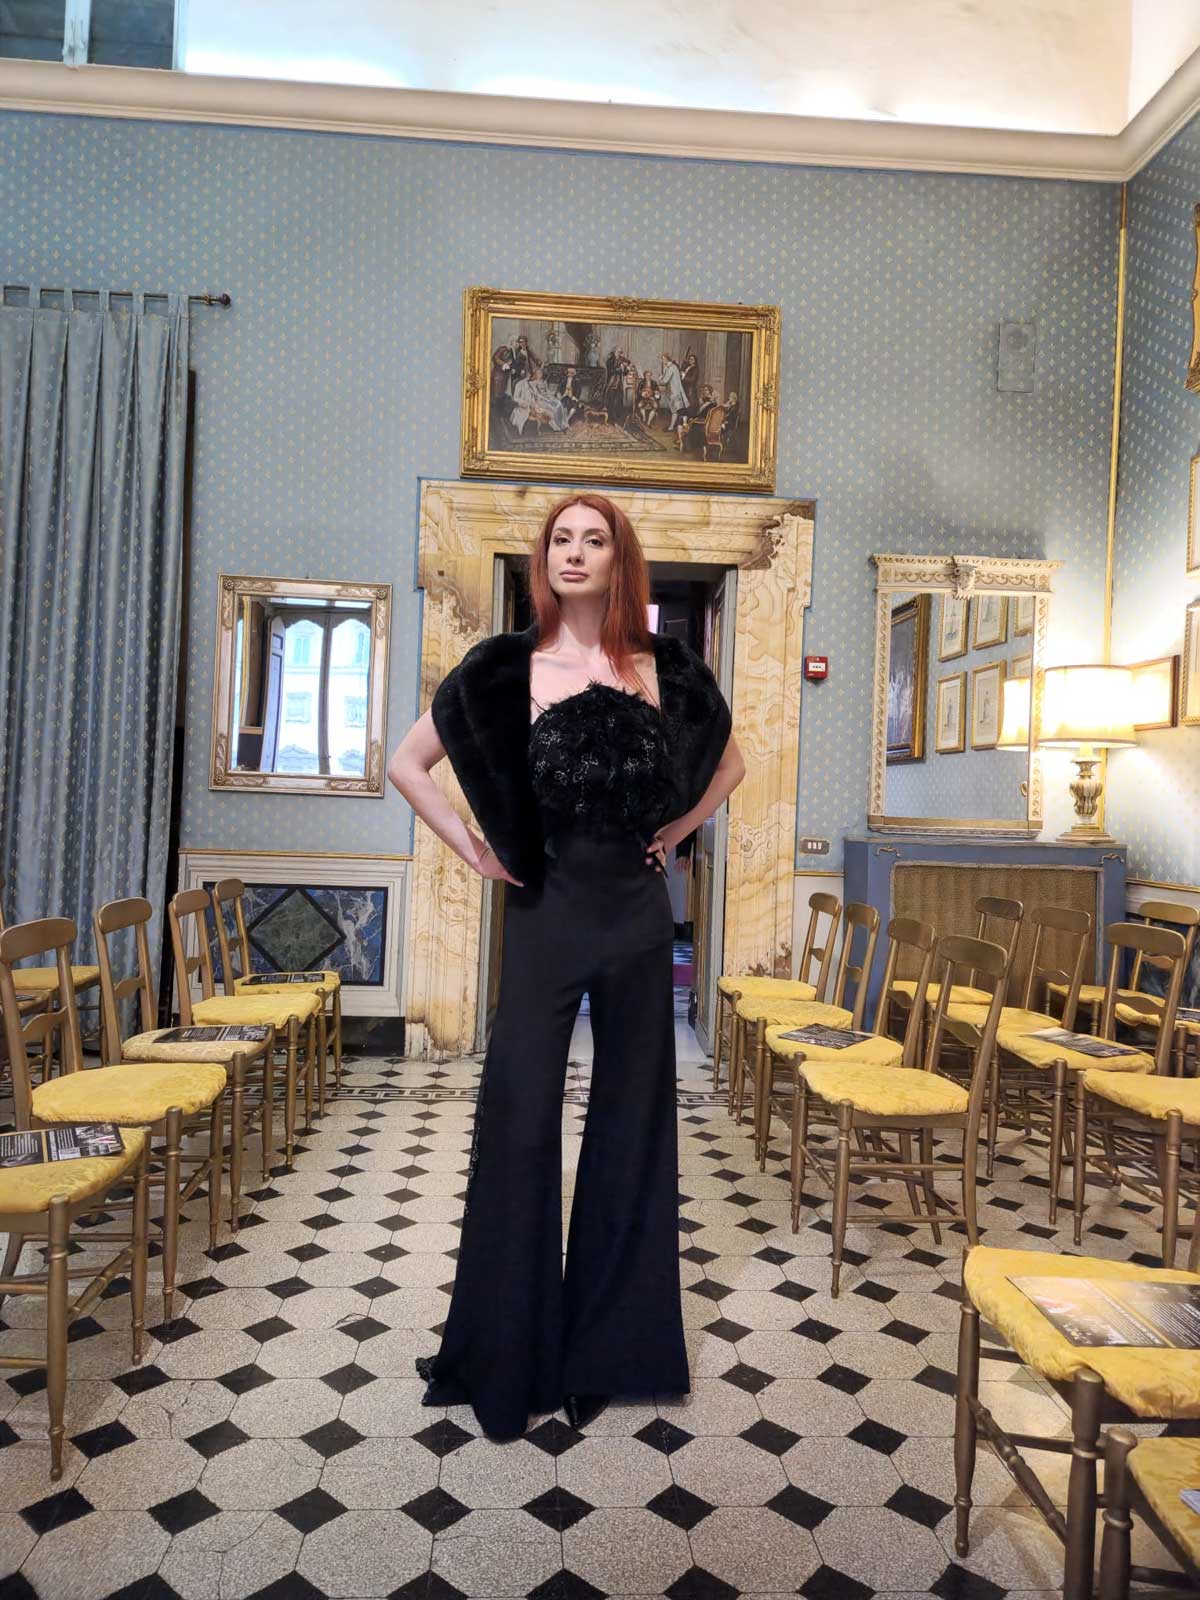 Mod’Art Roma - Il fascino dei colori - sfilata modelle nello storico Palazzo Ferrajoli - evento d’alta moda con gli eleganti abiti di Elins moda ragazza indossa abito elegante nero da cerimonia